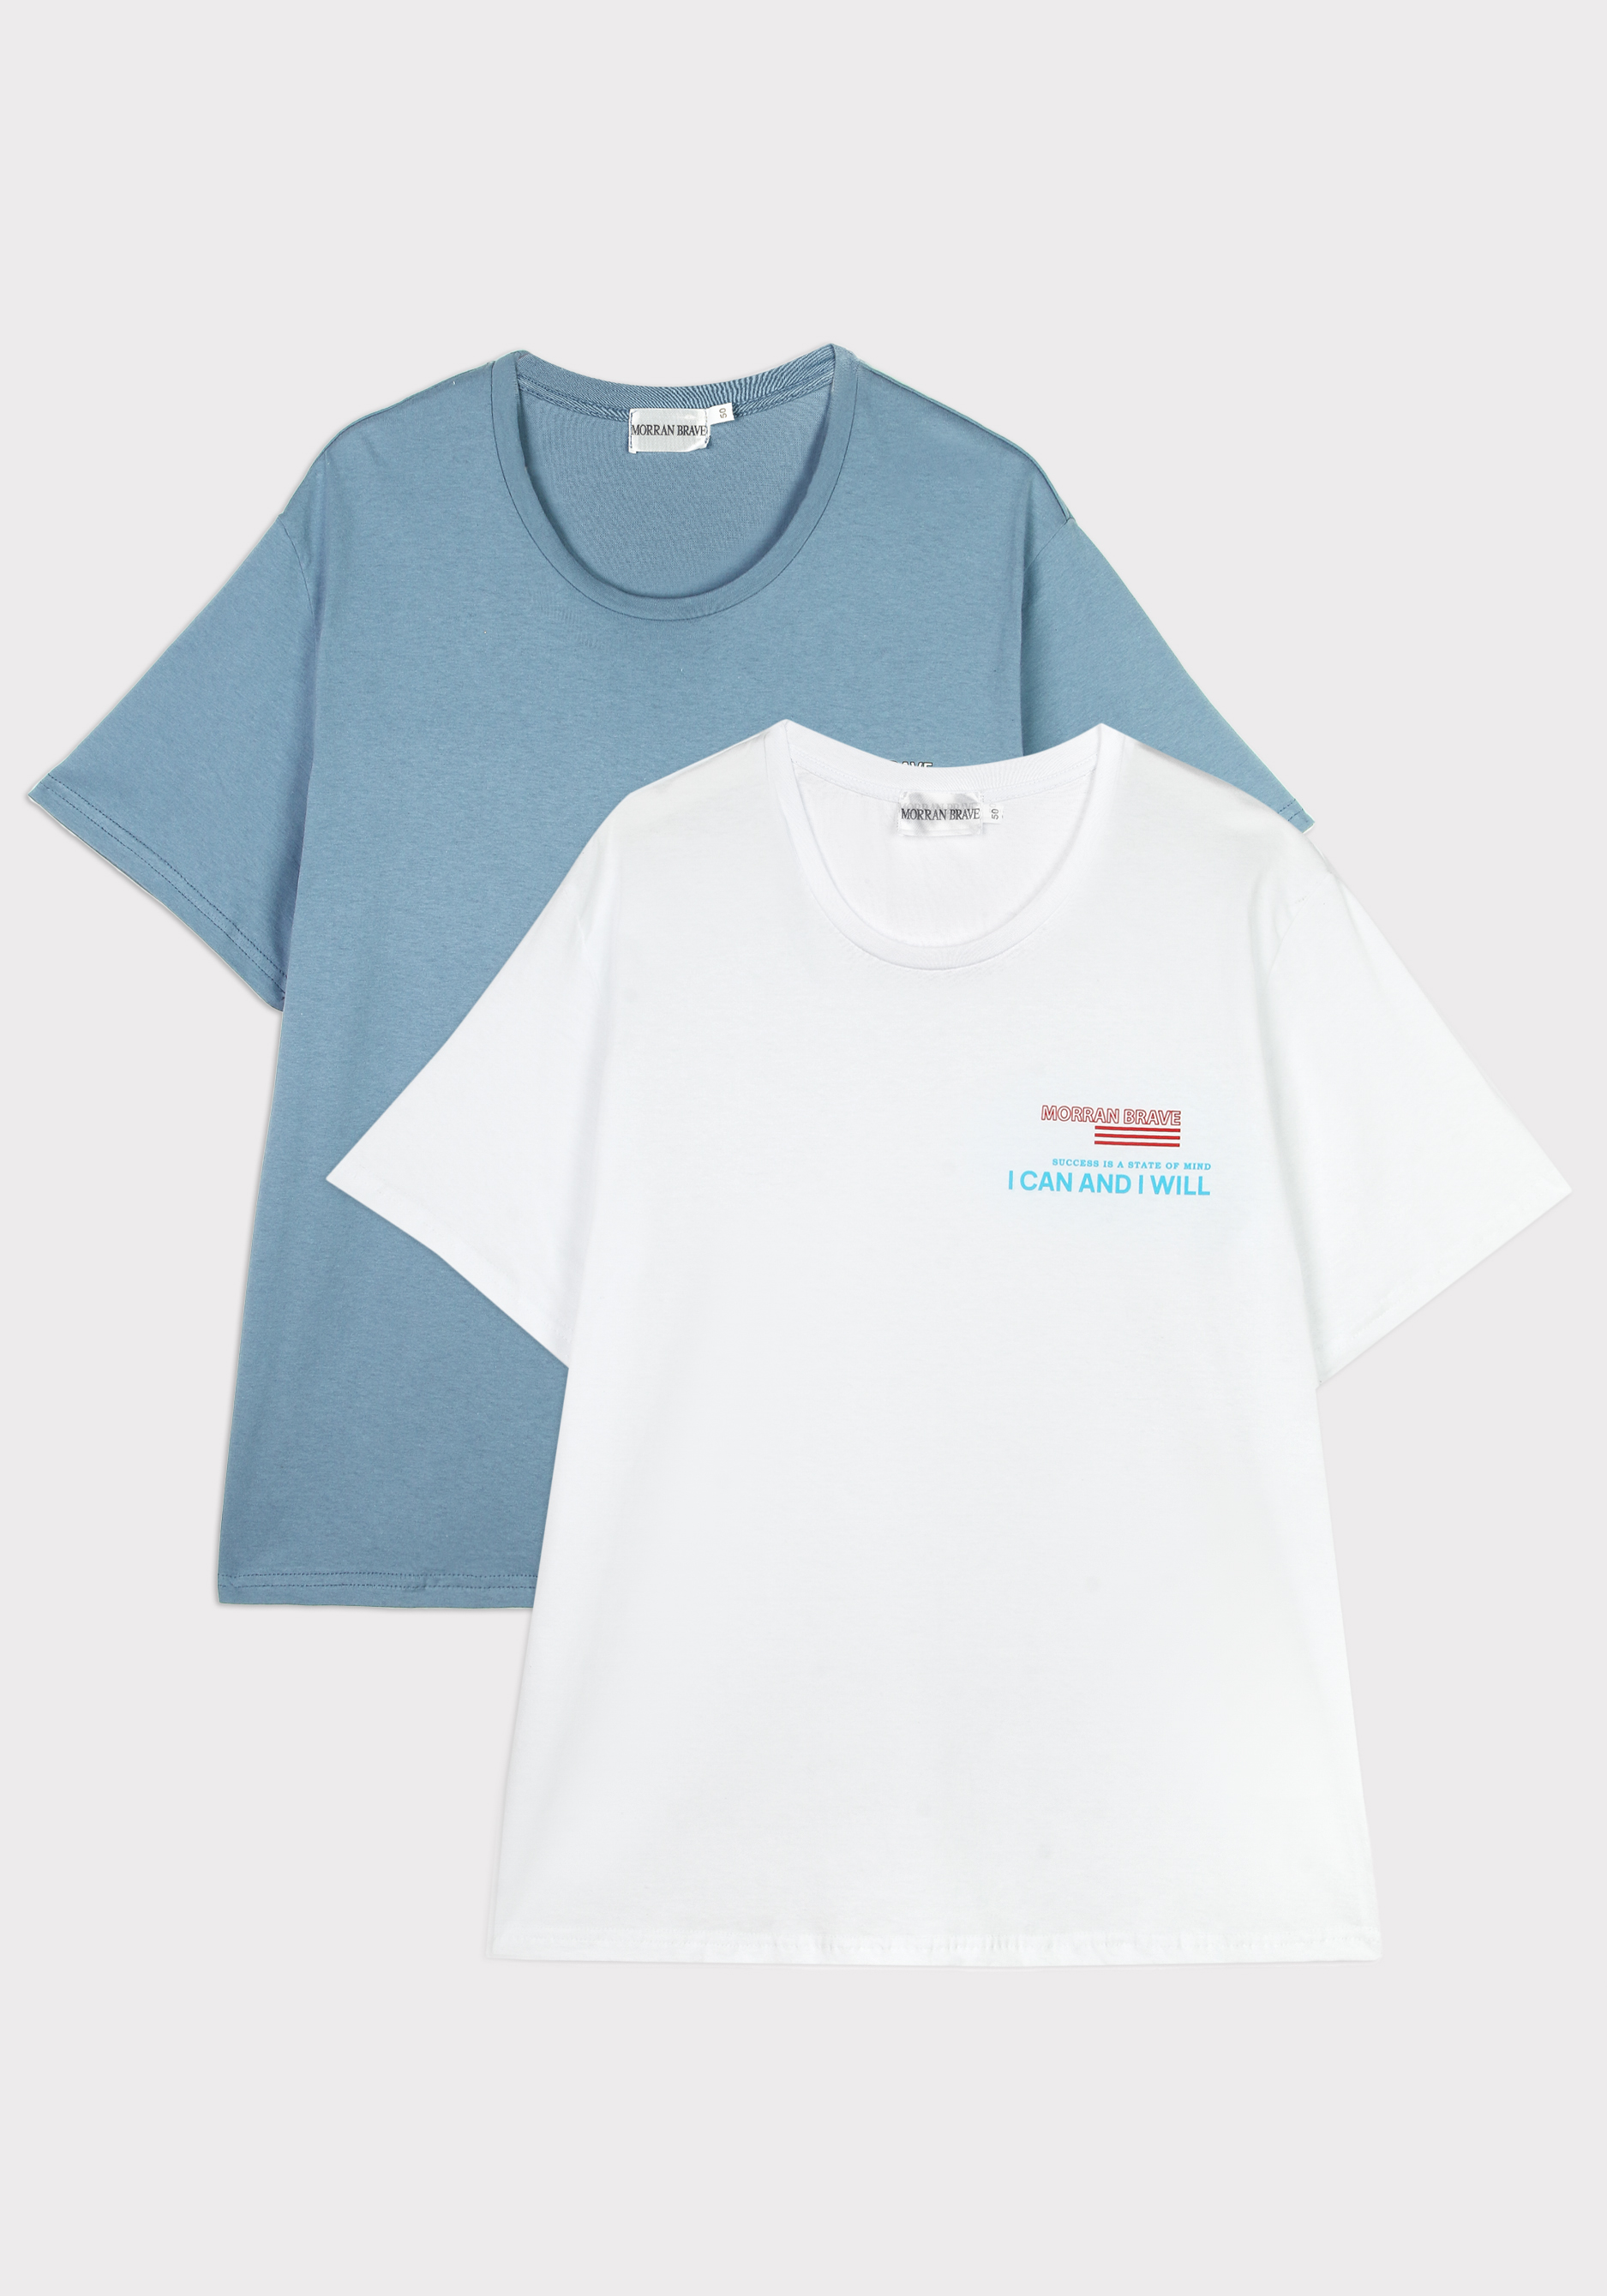 Комплект мужских футболок с принтом комплект трикотажный фуфайка футболка юбка шорты